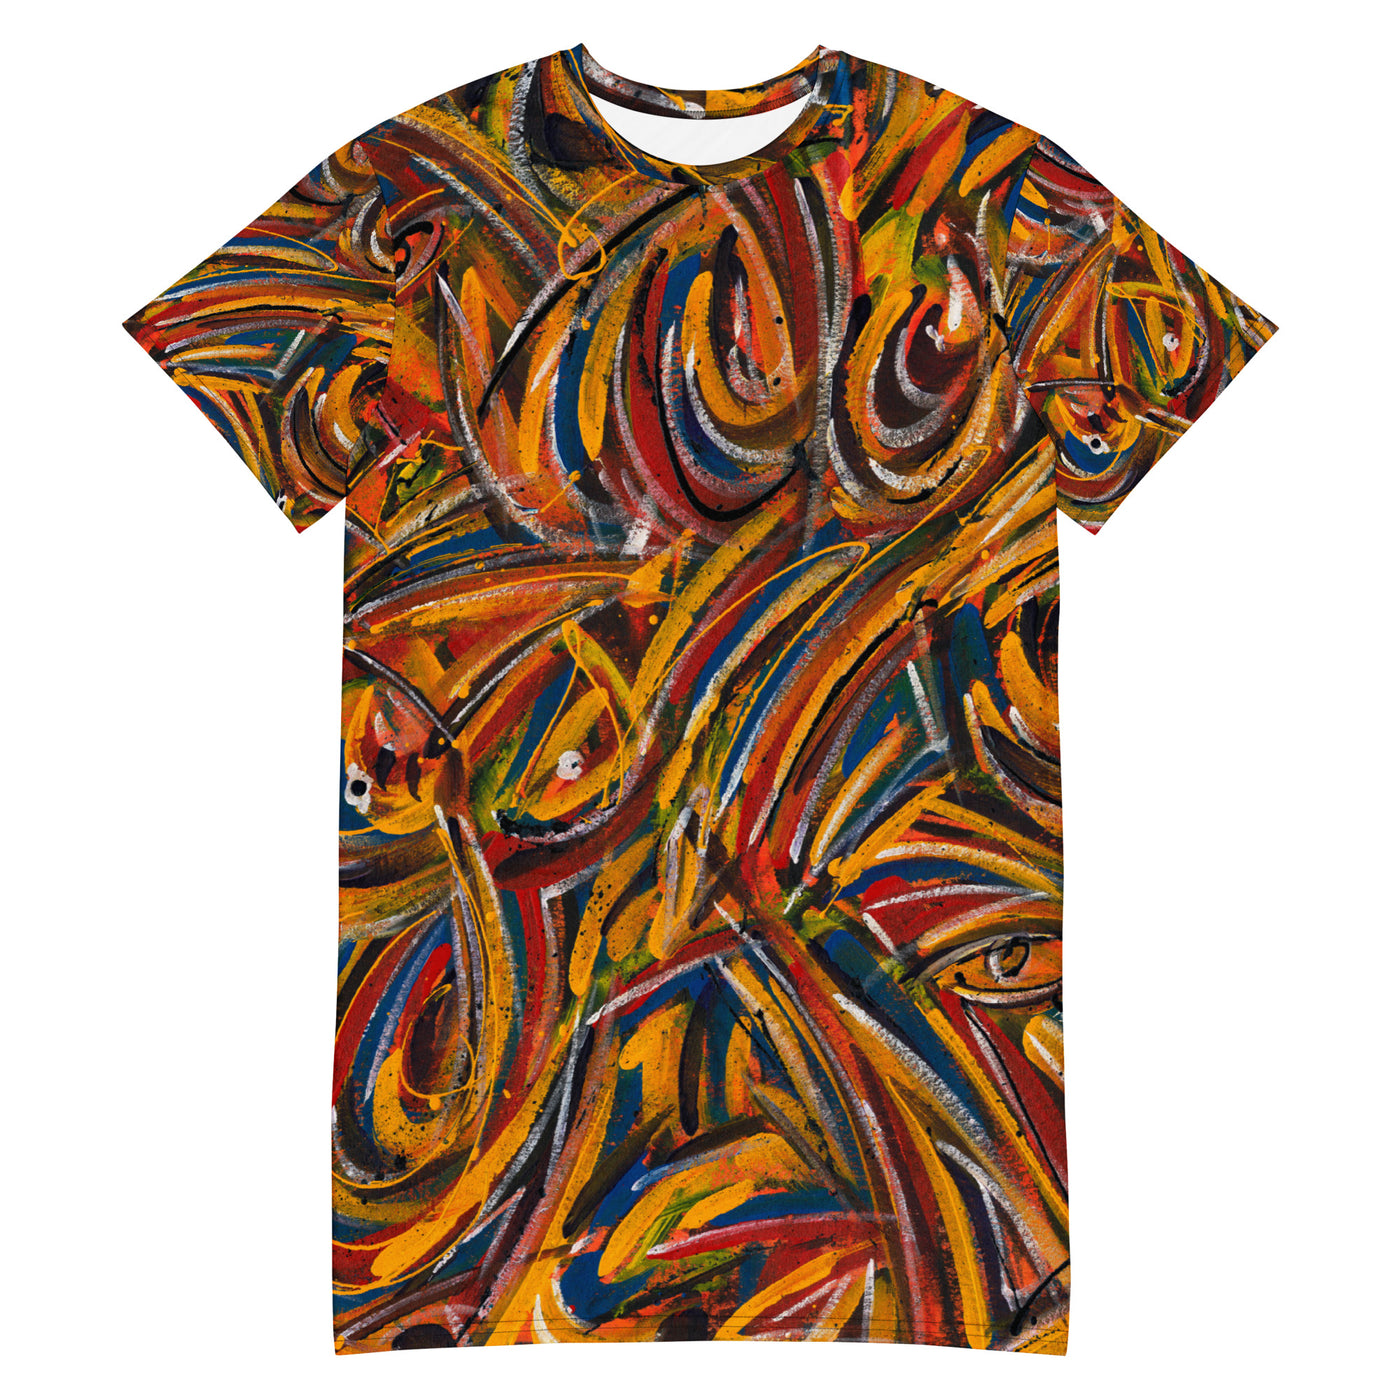 Chasing Fire Art T-shirt dress